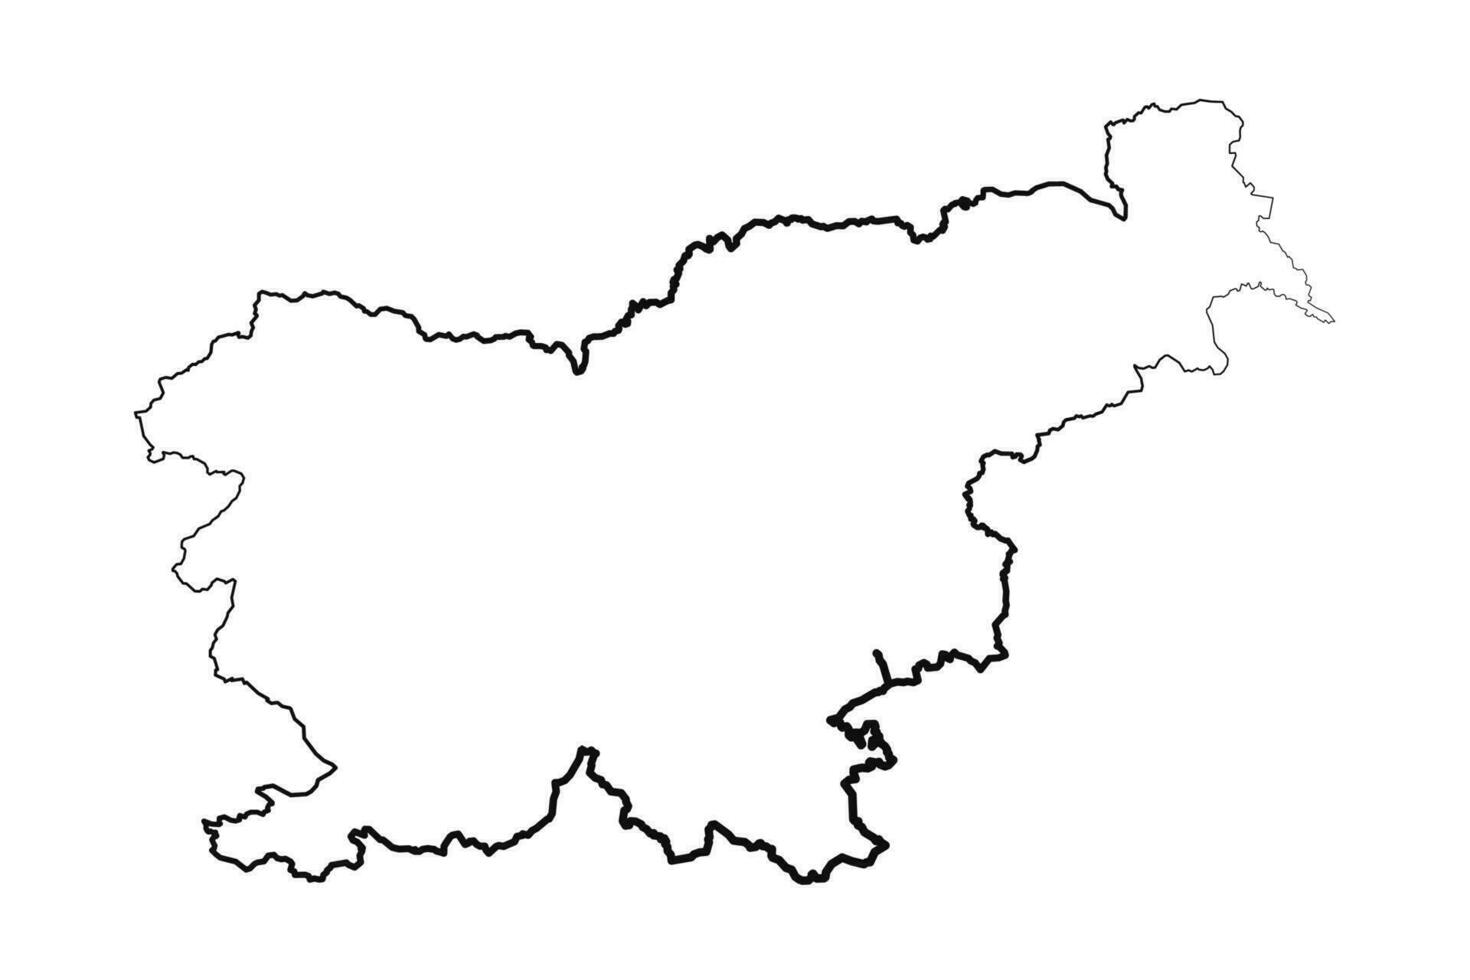 mano disegnato foderato slovenia semplice carta geografica disegno vettore